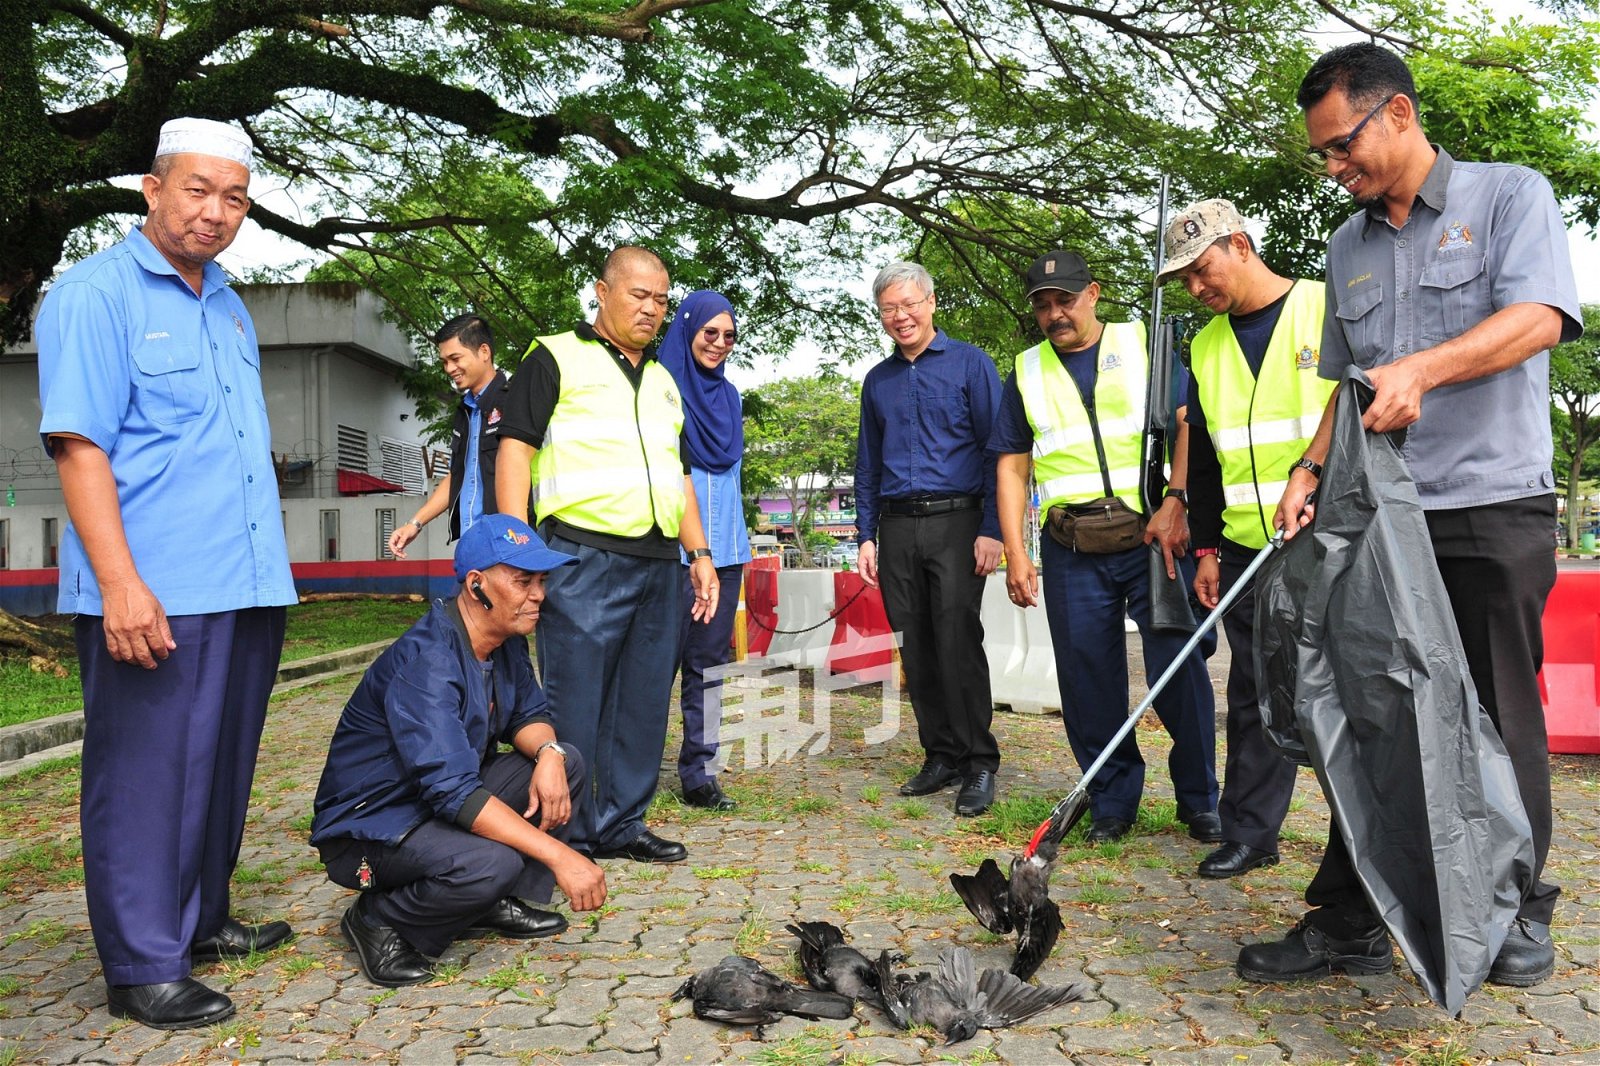 阿克玛（左4其）及新山市议员文新伟，在观察市政局官 员将一被射死的乌鸦尸体装进黑色塑胶袋。 （摄影：杨金森）